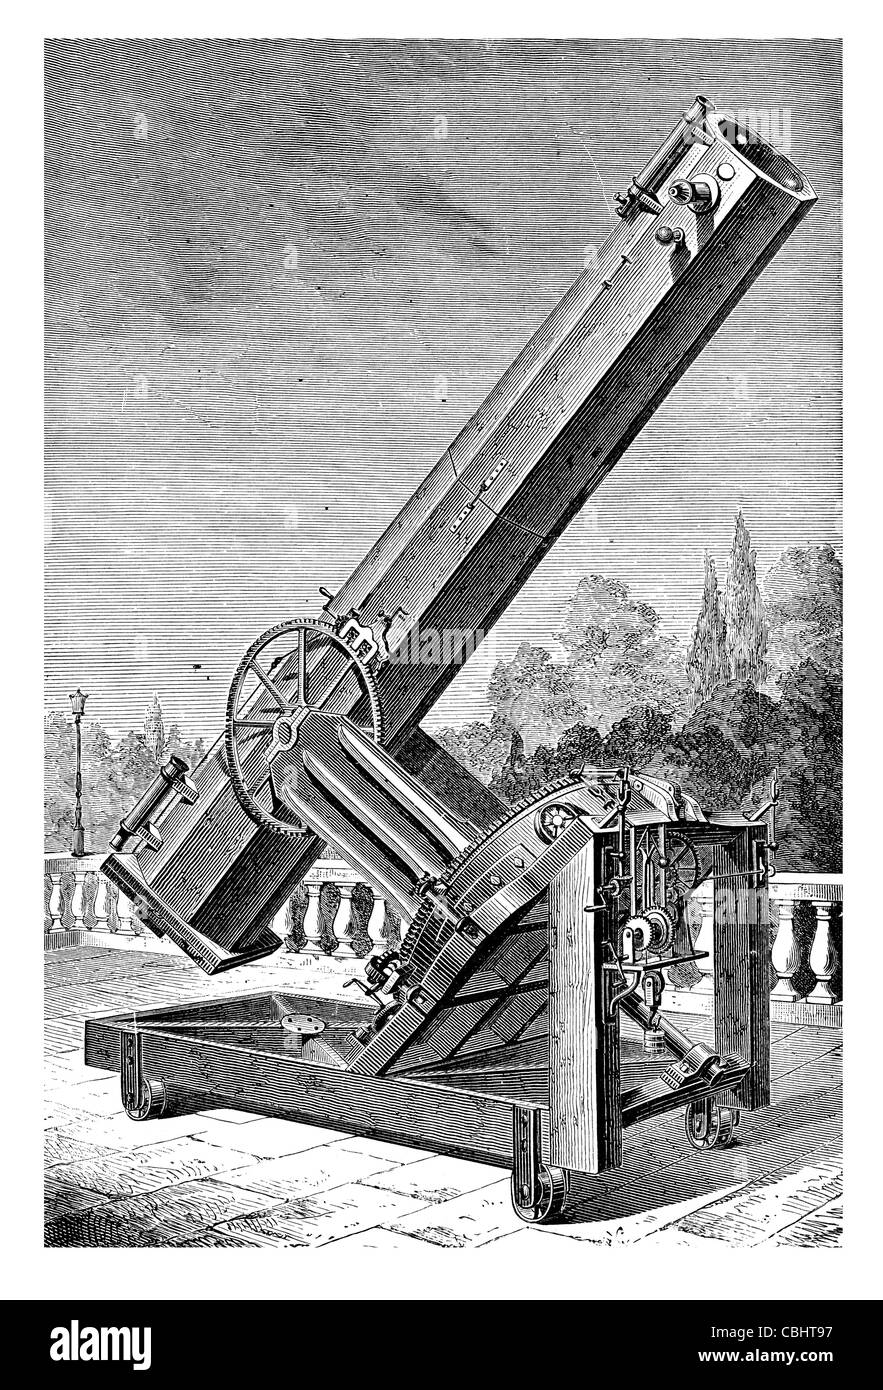 Eine Spiegel Argente de l'obsevatoire de Marseille optischen Teleskop Beobachtung Astronomie Astrologie Wissenschaft natürliche Teleskop Stockfoto